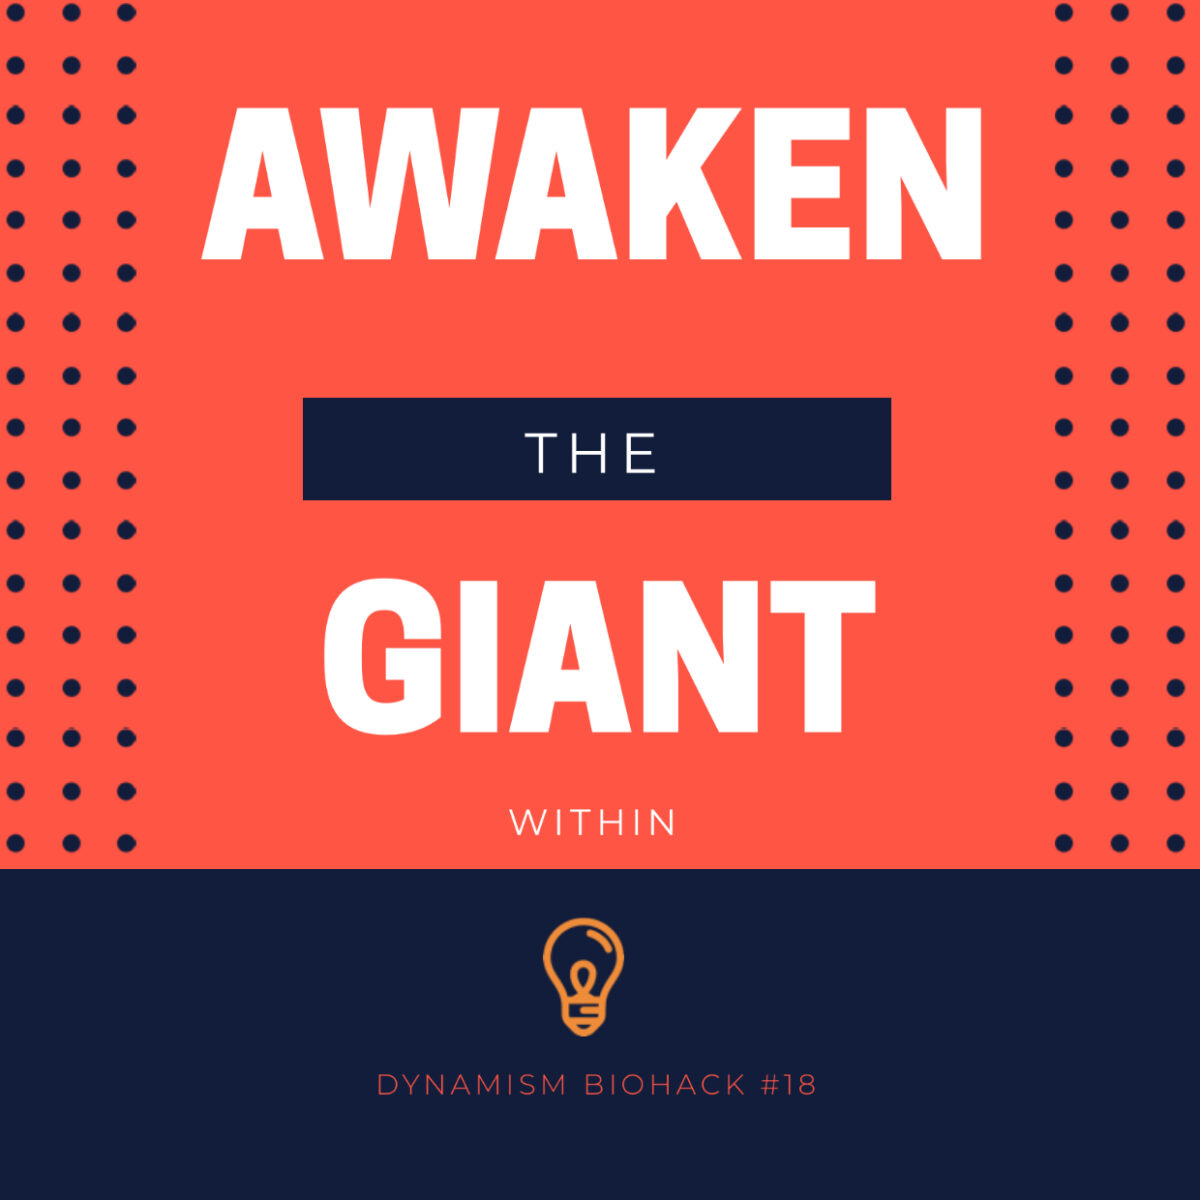 #25: Awaken The Giant Within